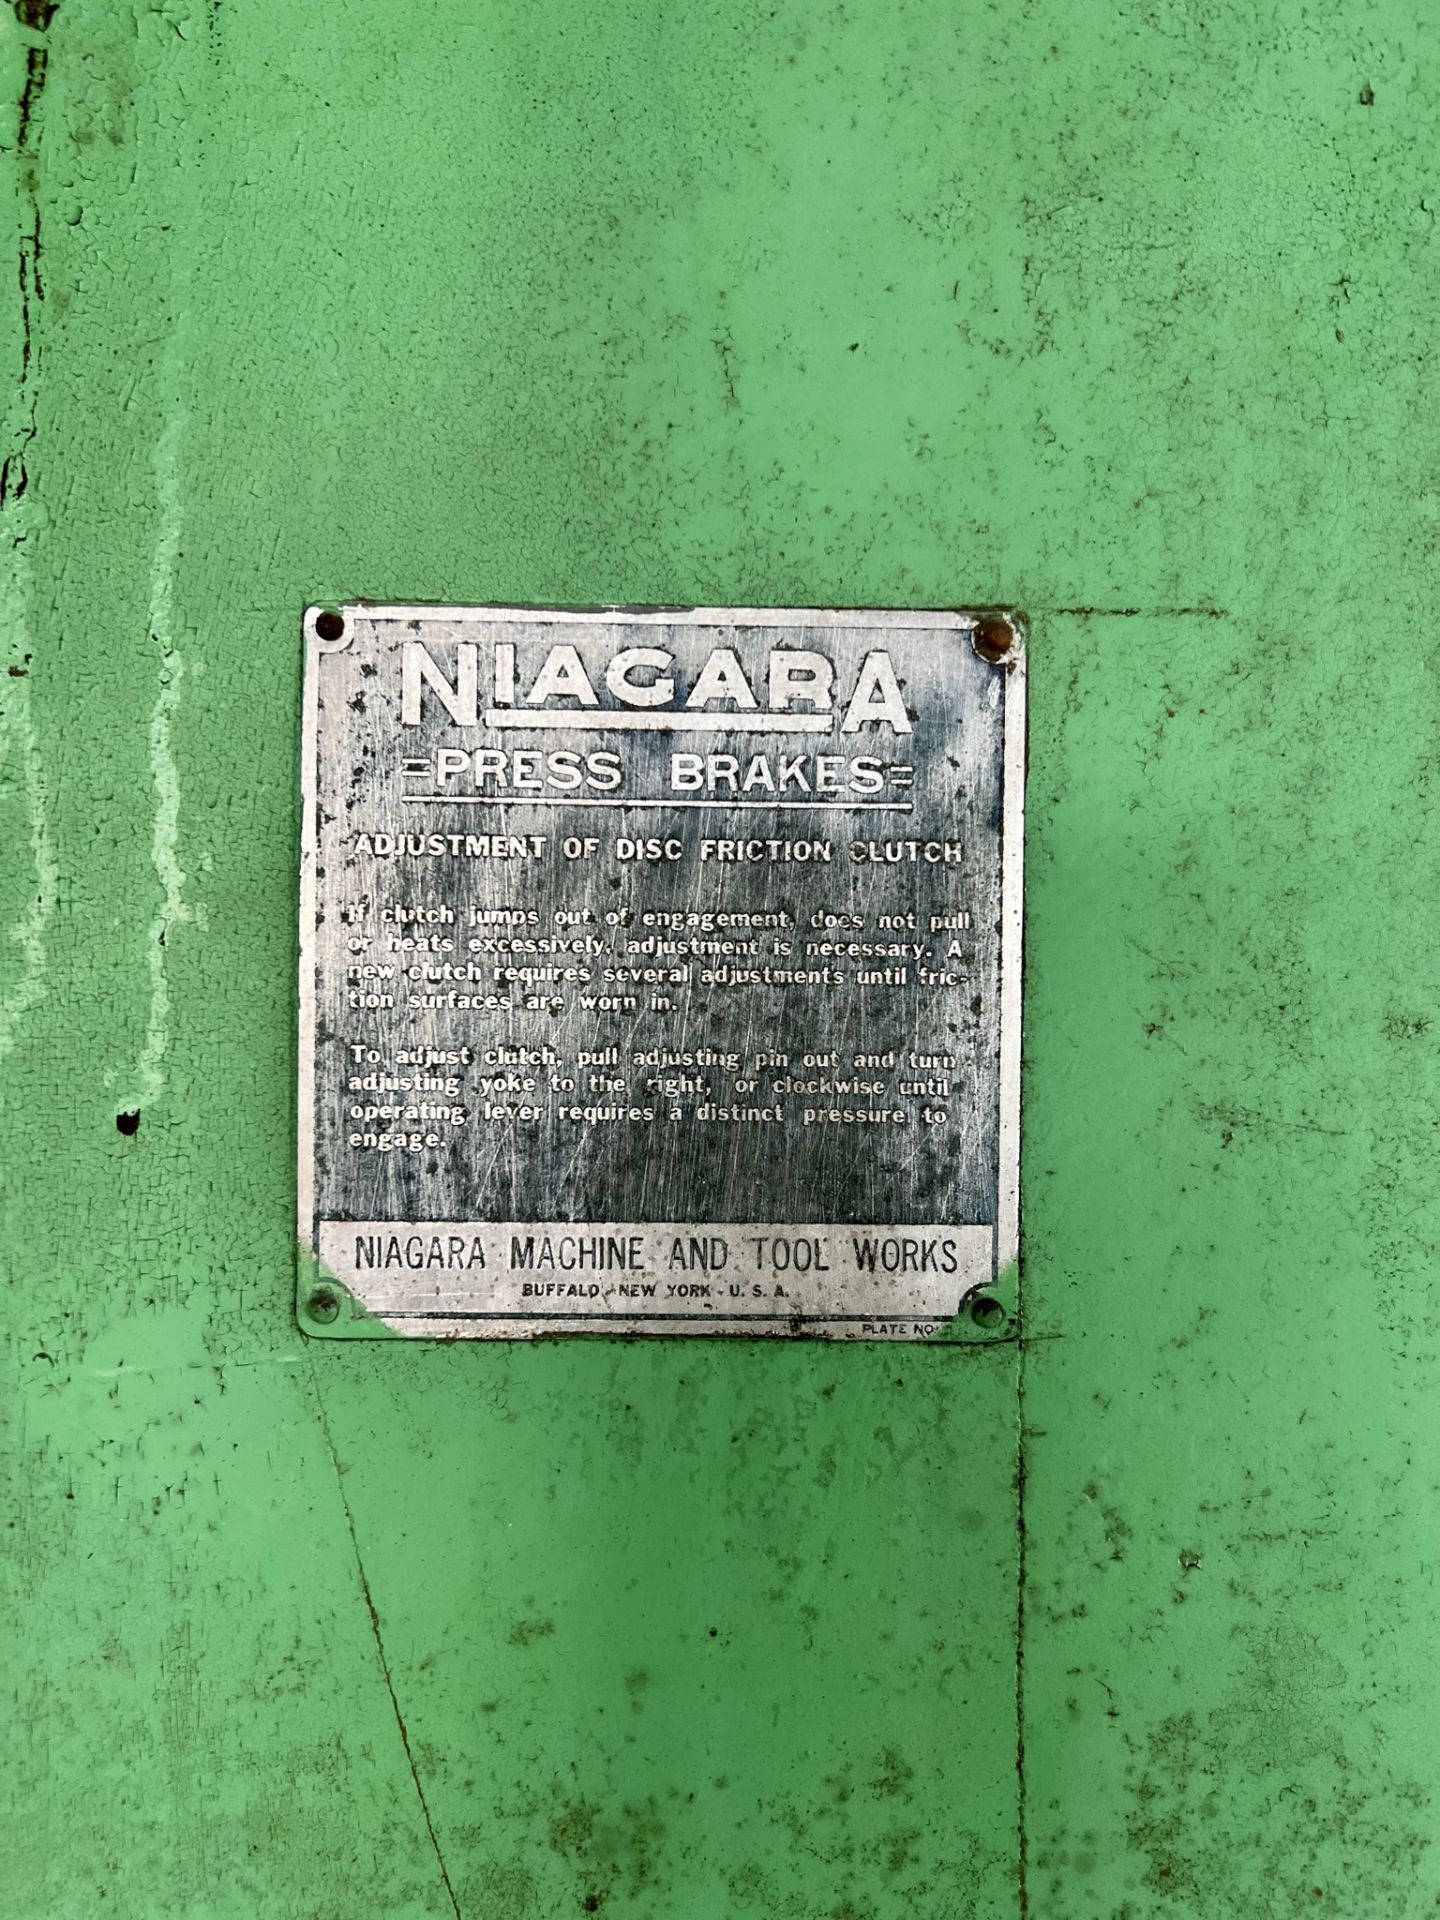 NIAGARA 12' PRESS BRAKE, MECHANICAL - Image 8 of 8